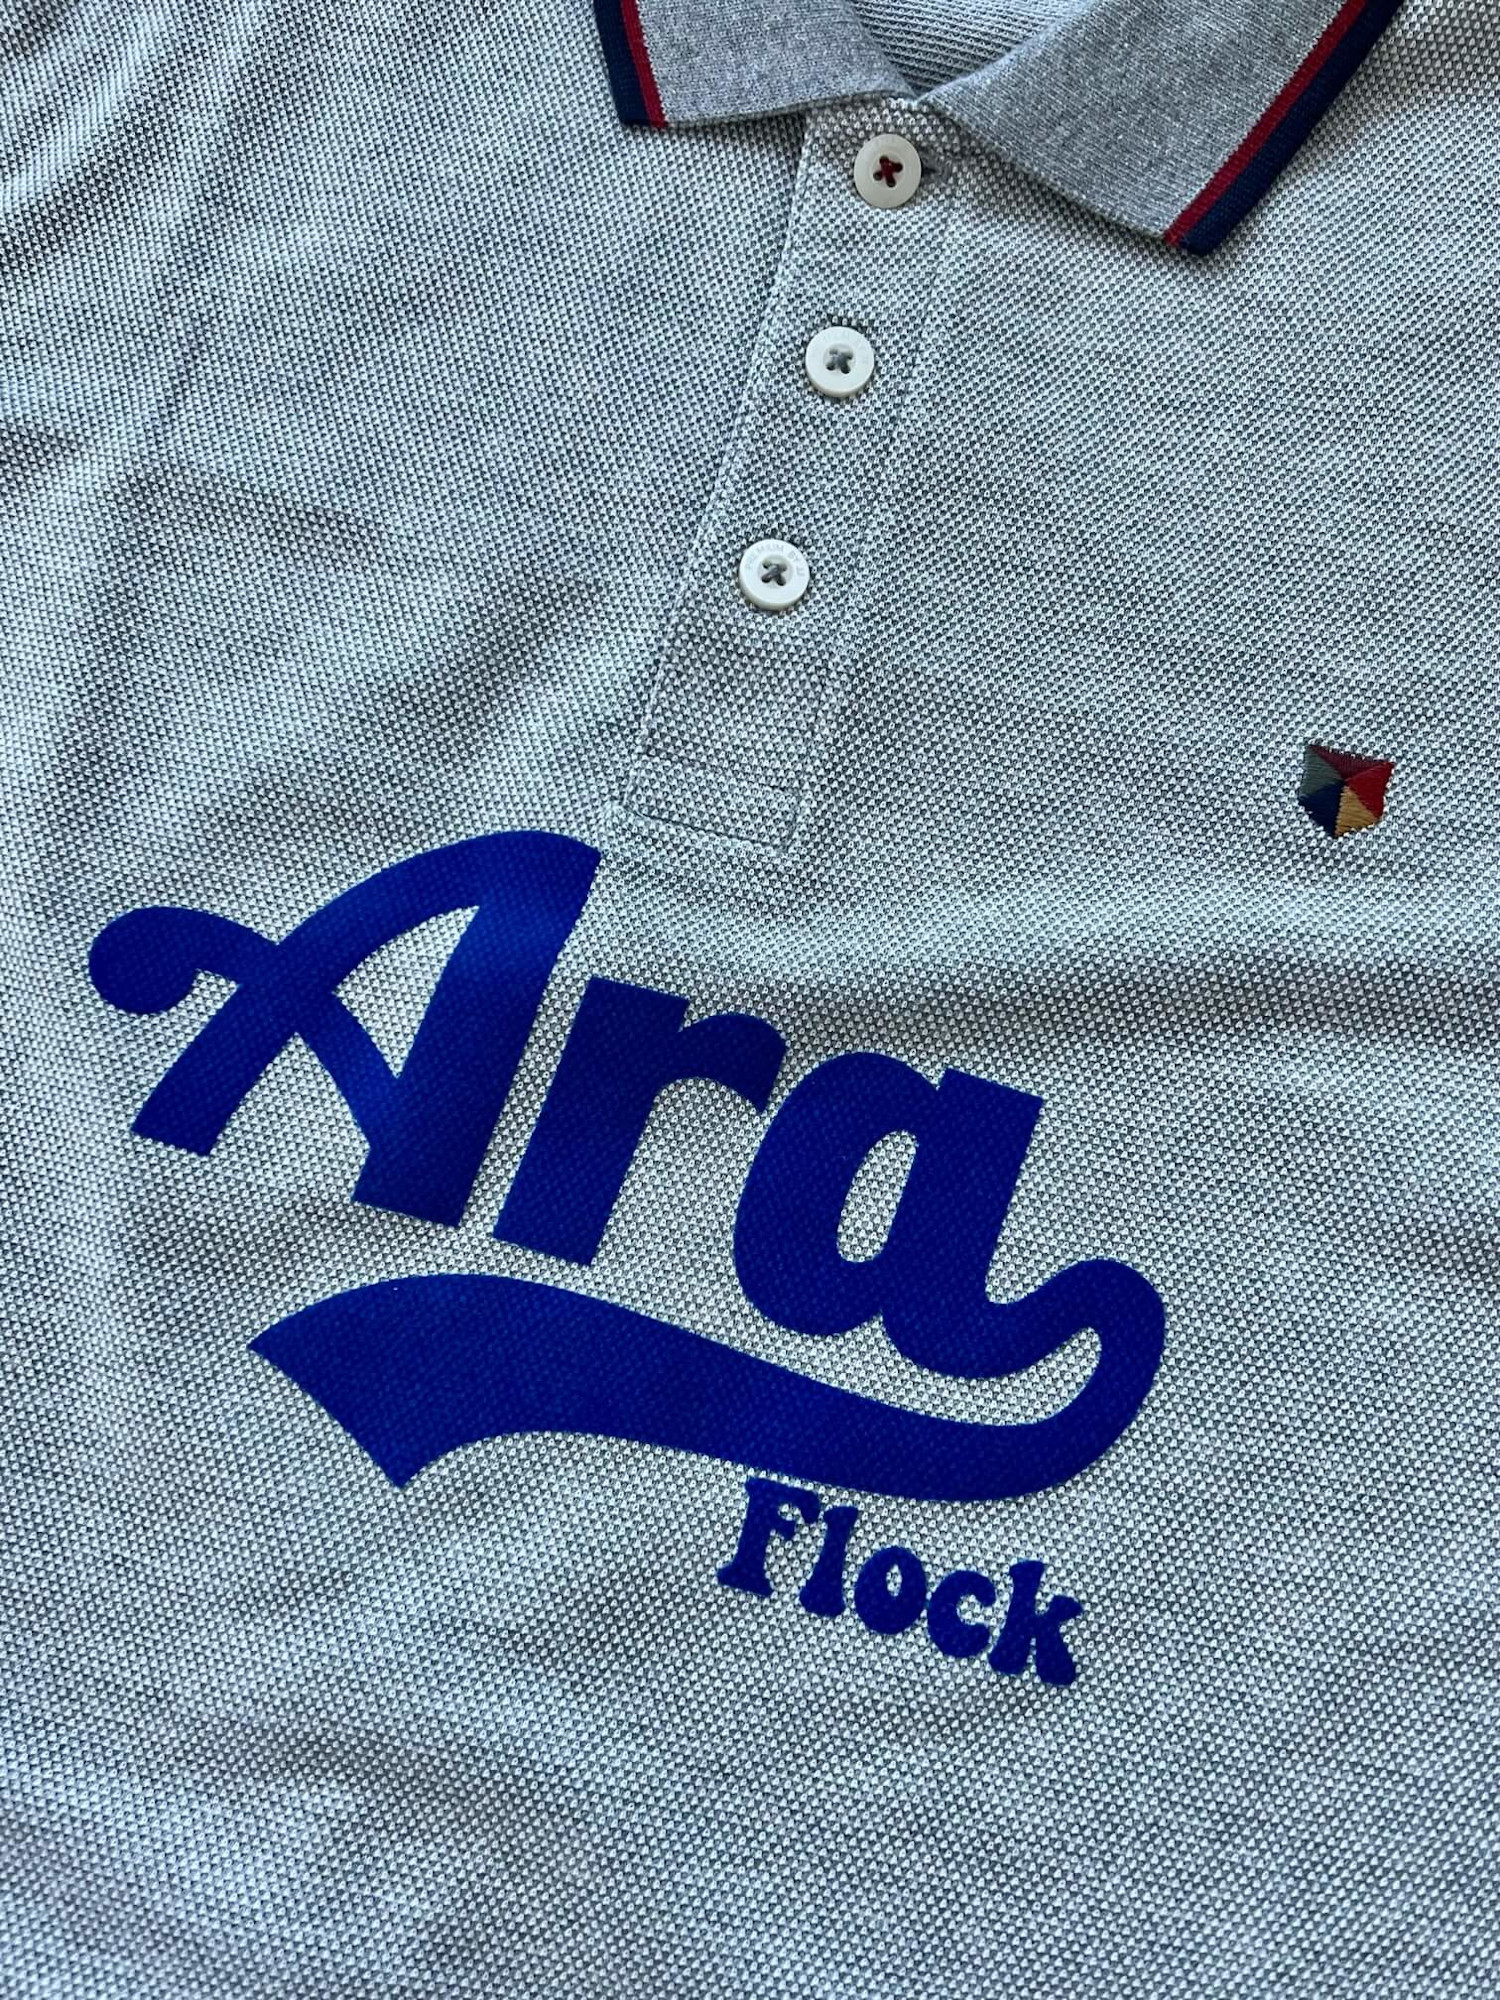 Go vintage avec les nouveaux transferts Ara Flock!